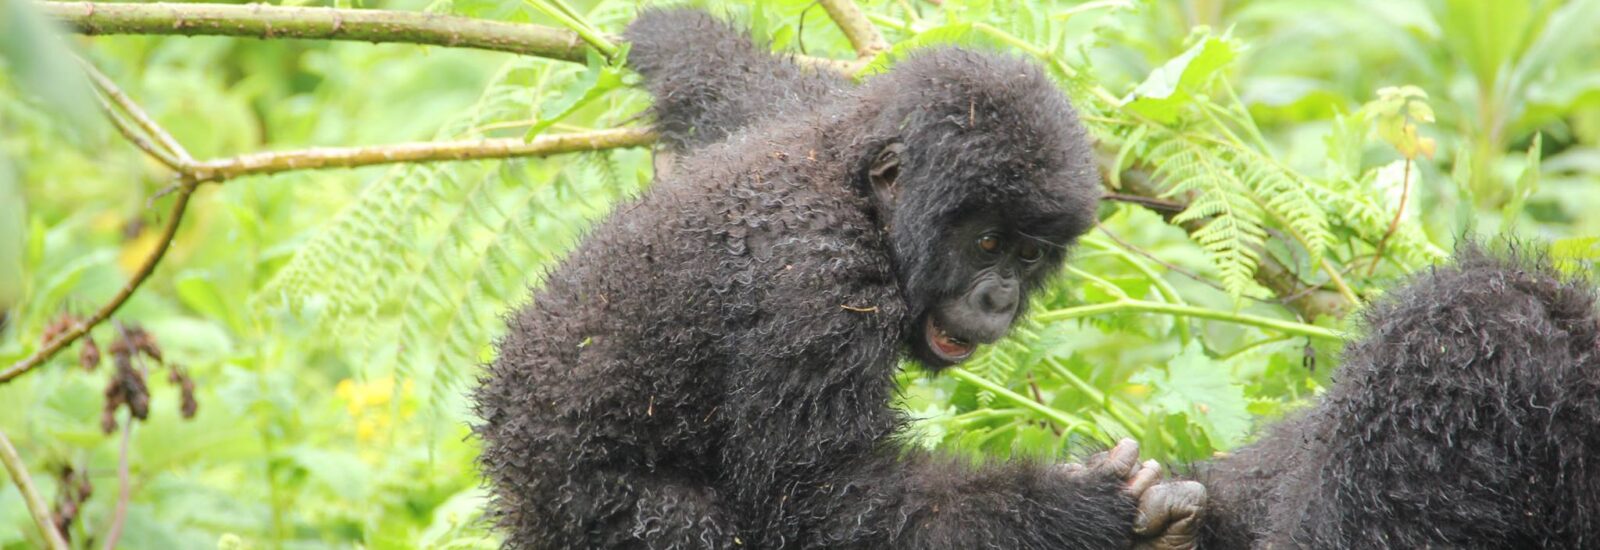 2 Days Rwanda Gorilla Safari